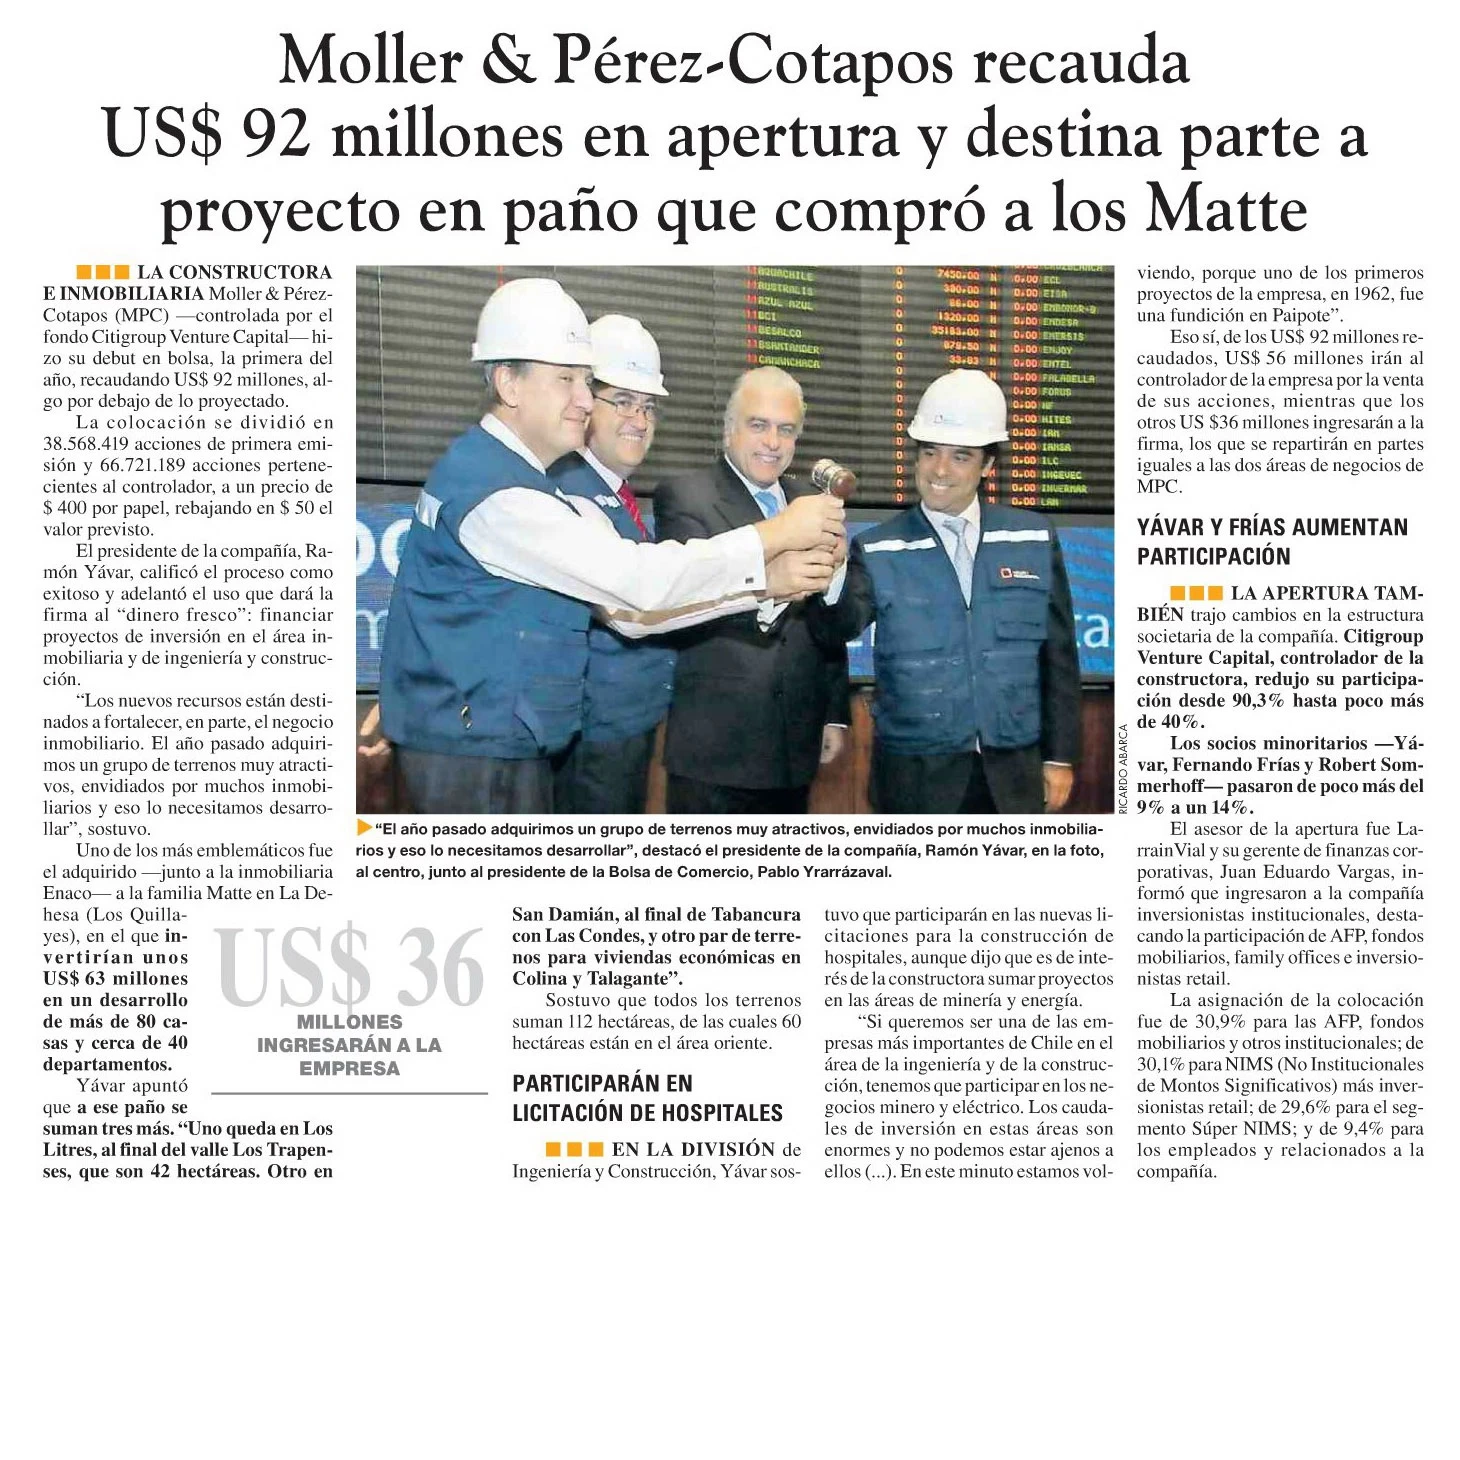 Moller & Pérez Cotapos recauda US$ 92 millones en la apertura y destina parte a proyecto en paño que compró a los Matte